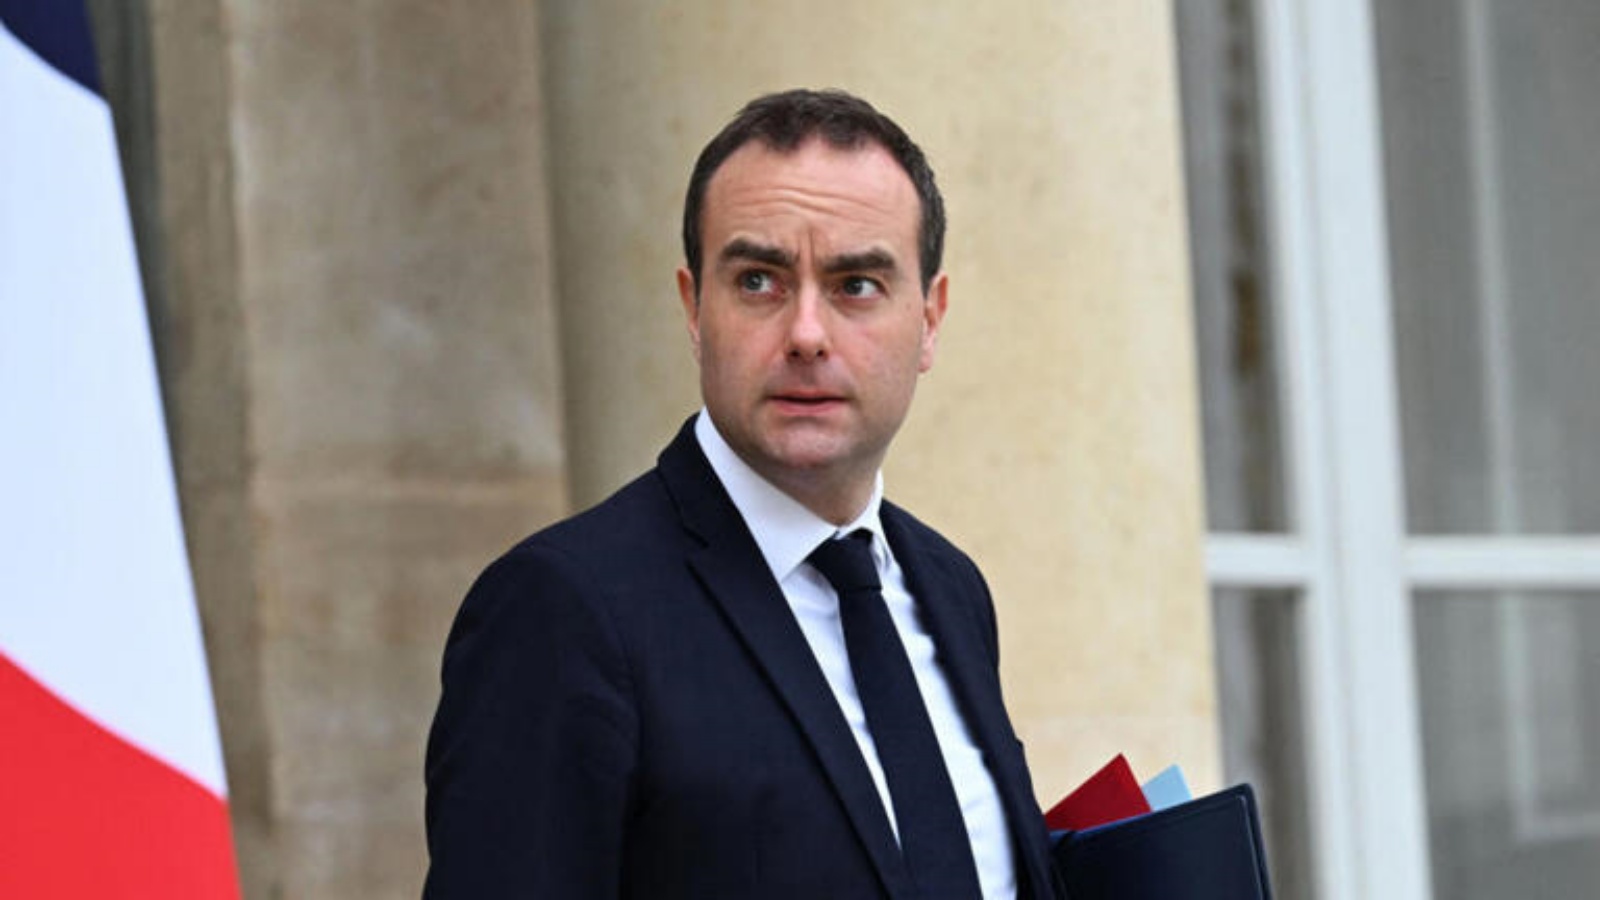 وزير الدفاع الفرنسي سيباستيان ليكورنو يخرج من قصر الإليزيه بعد الاجتماع الأسبوعي الأخير لمجلس الوزراء هذا العام، في باريس. الخميس 22 ديسمبر 2022